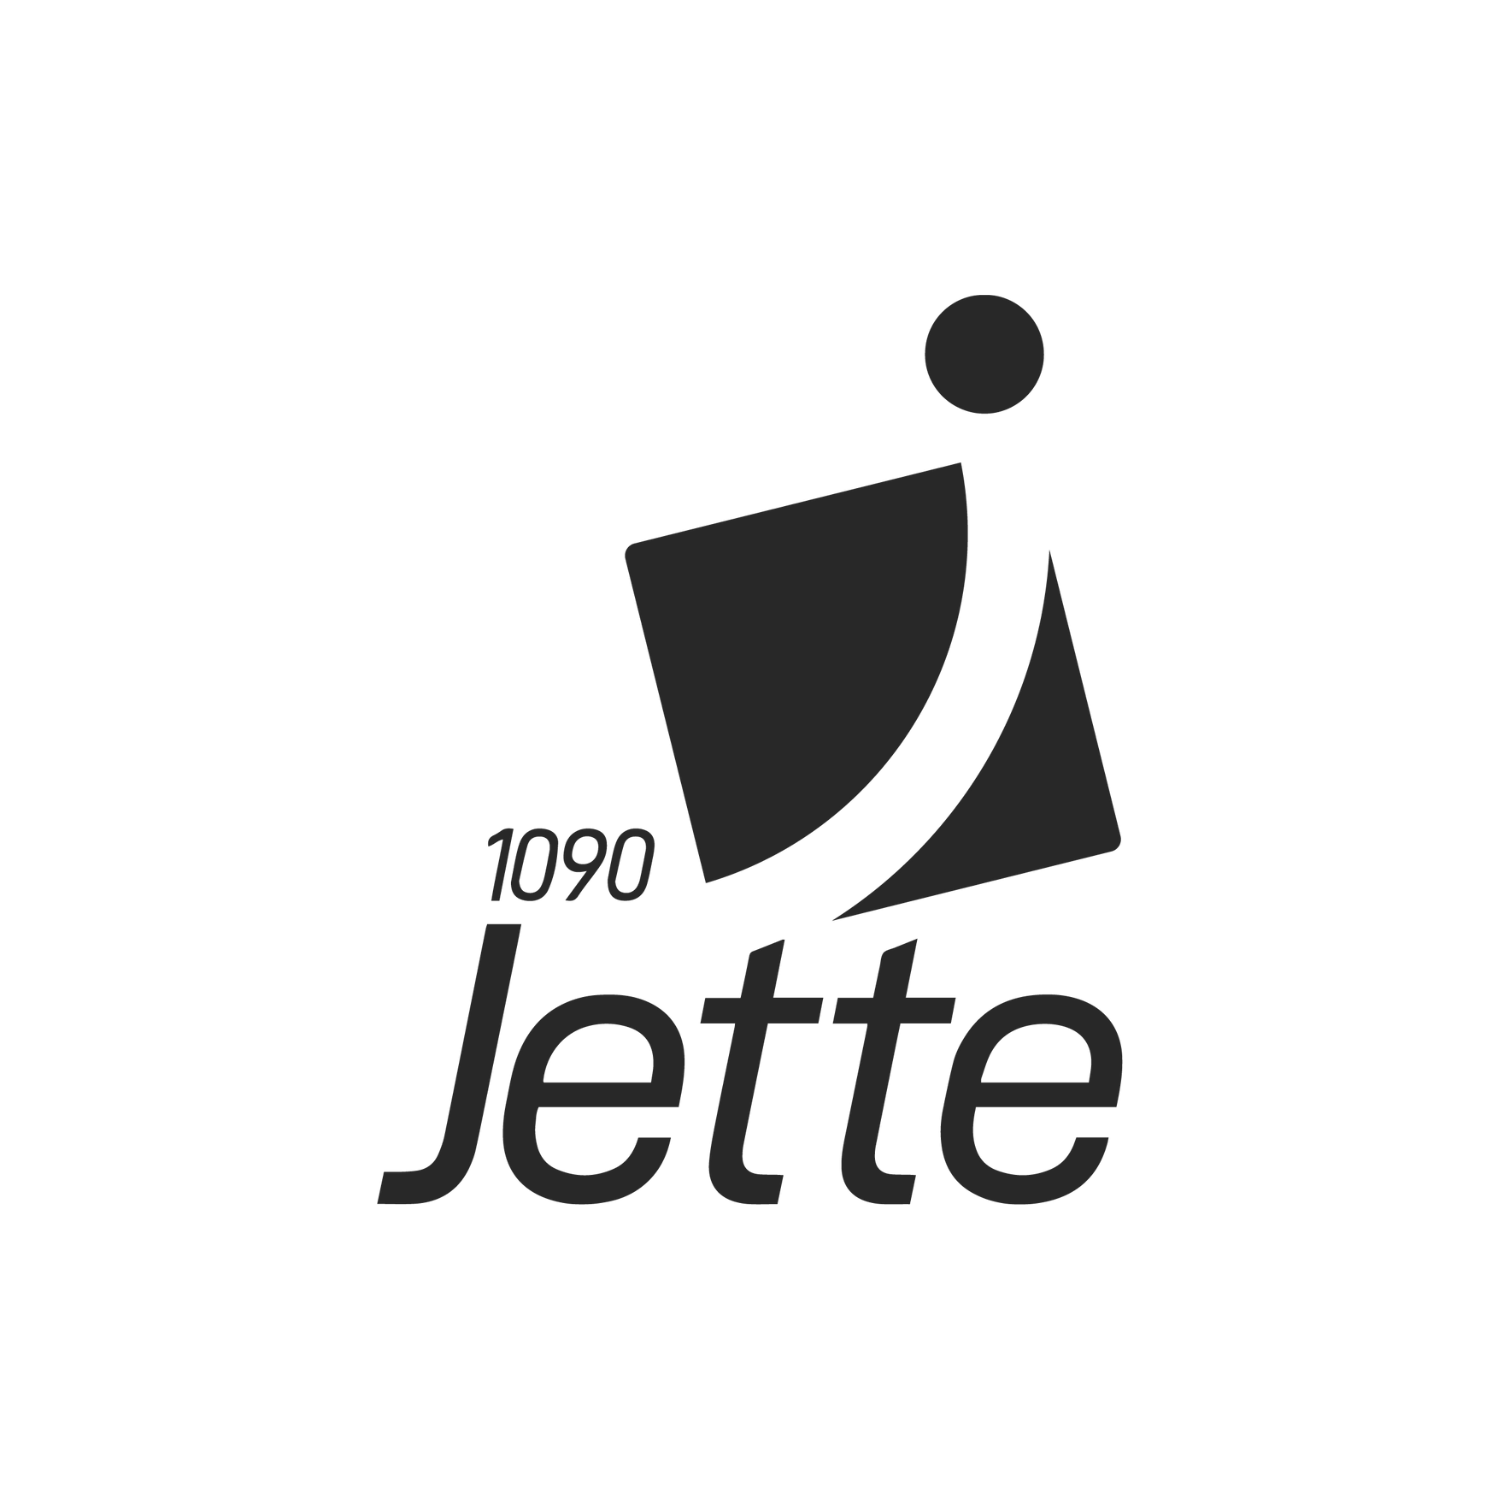 Commune de Jette